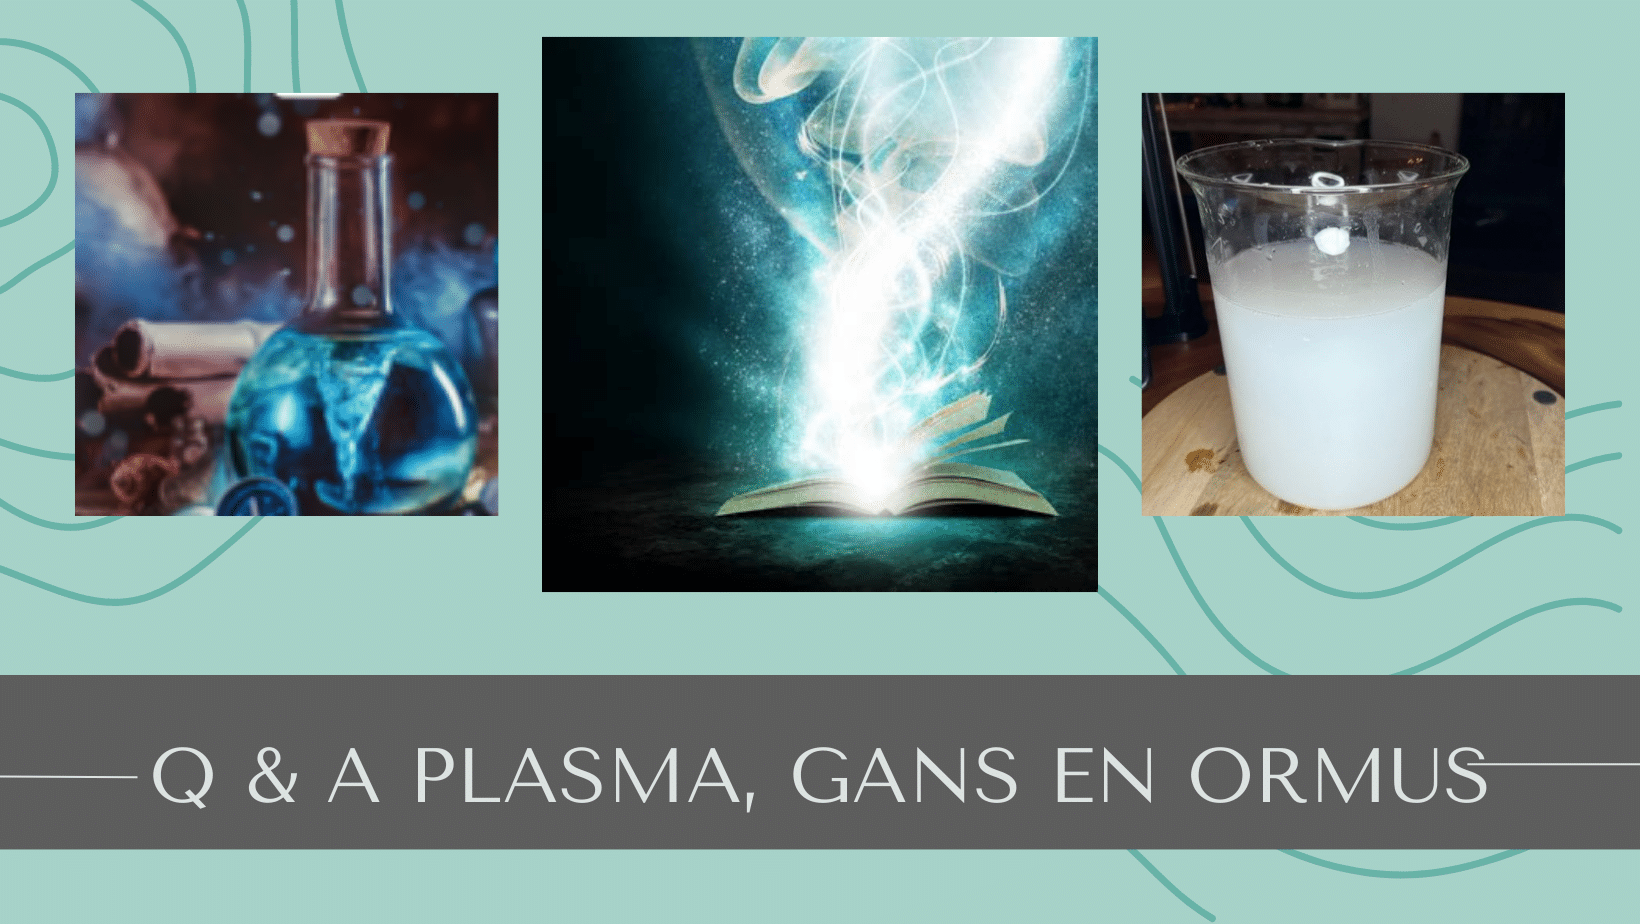 Q & A plasma gans en ormus